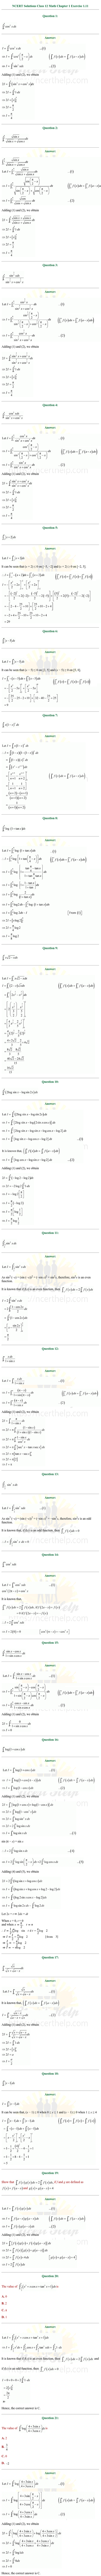 ex.7.11 Class 12 Math Chapter 7 ncert solutions